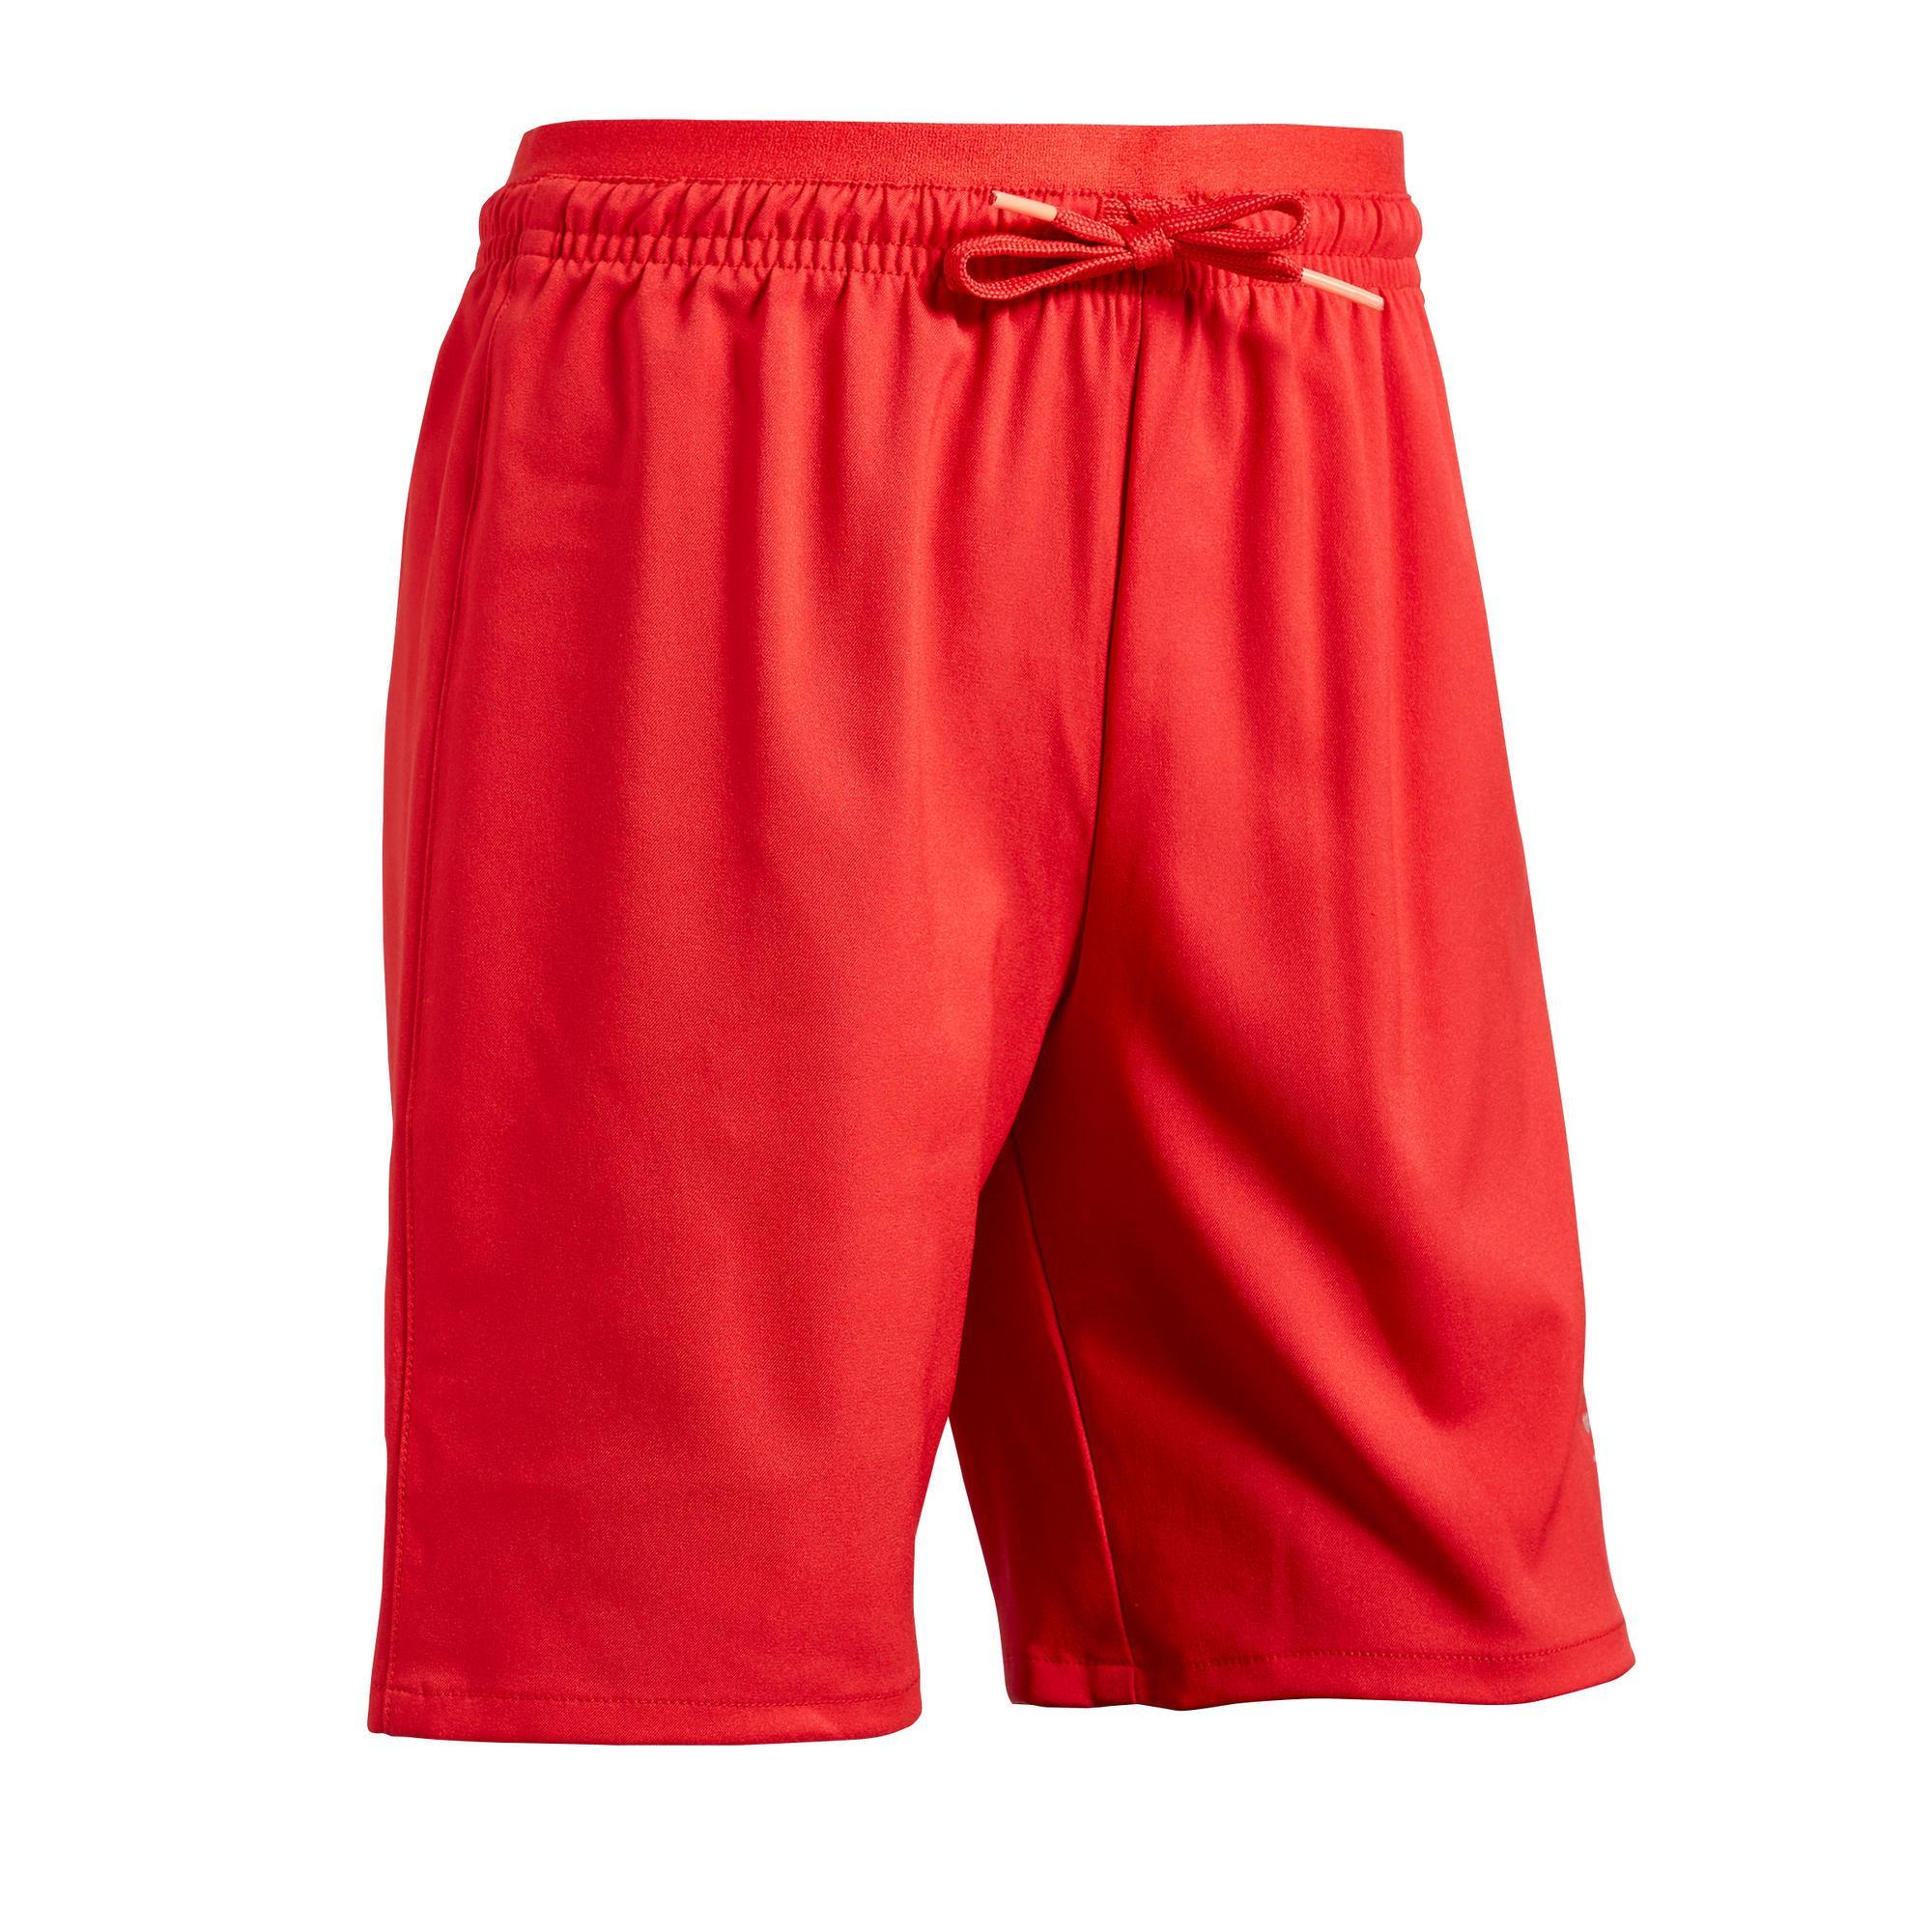 Adult Football Shorts - Football Shorts 